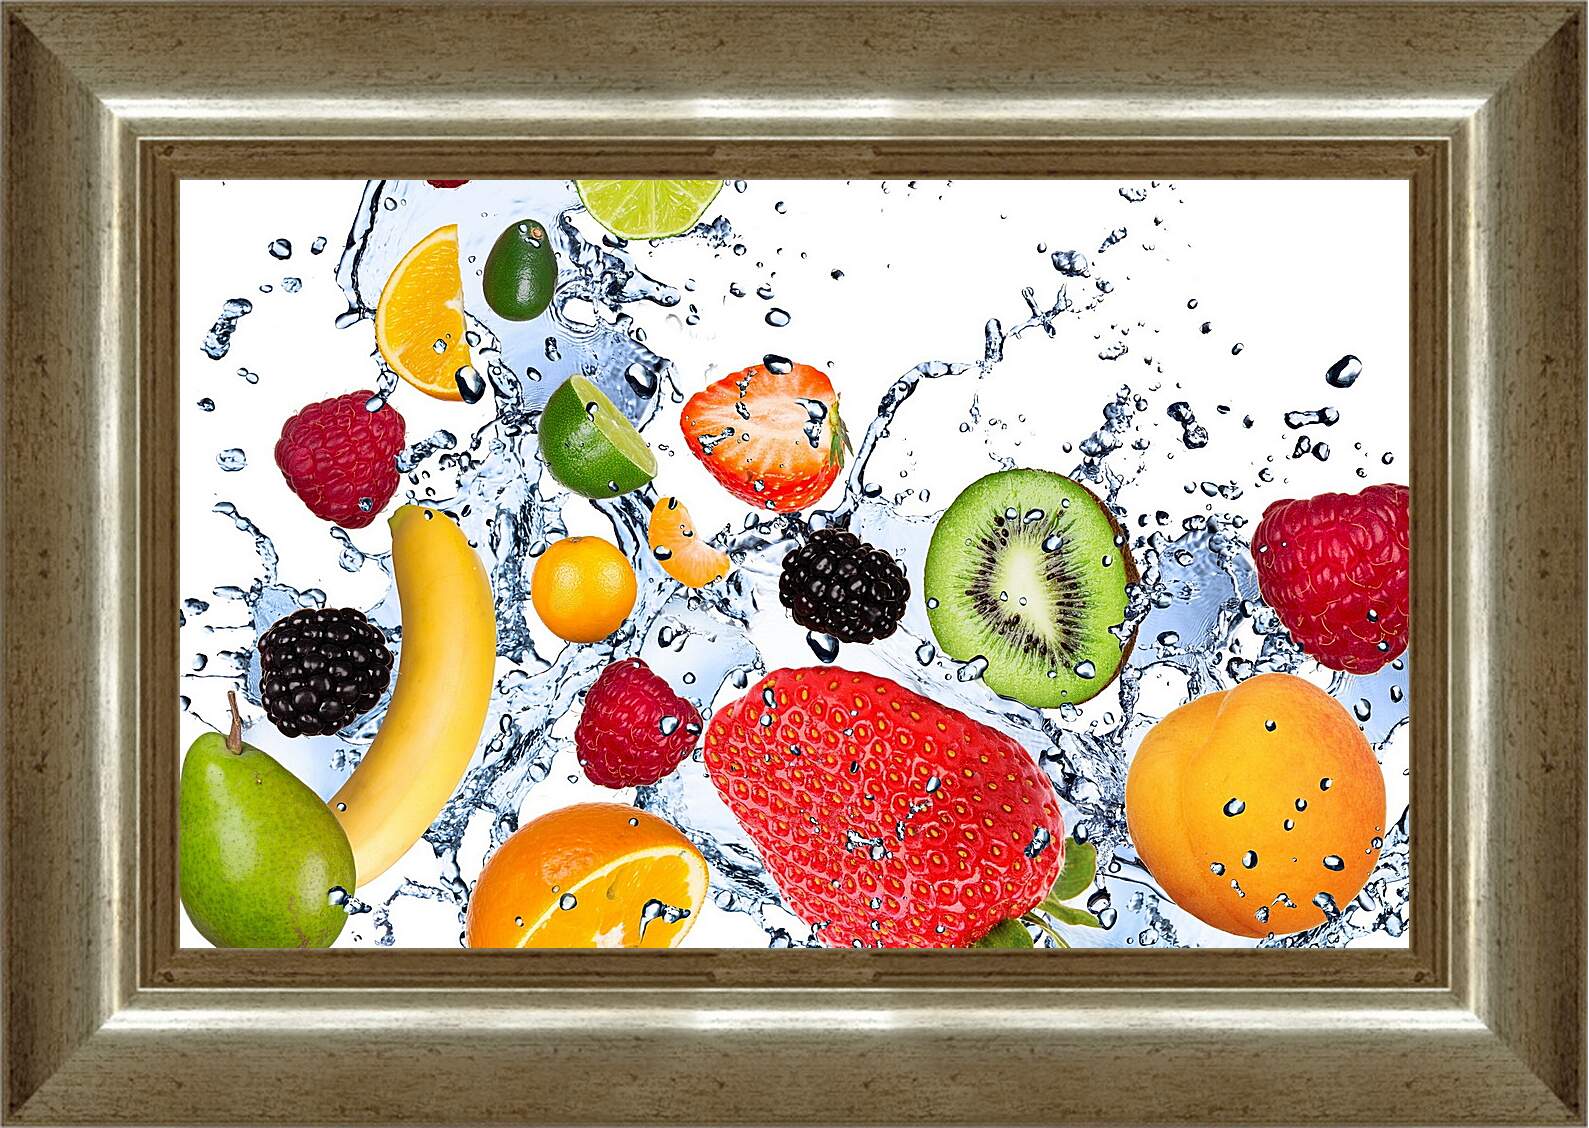 Картина в раме - Целые и половинки фруктов и ягоды на фоне брызг воды